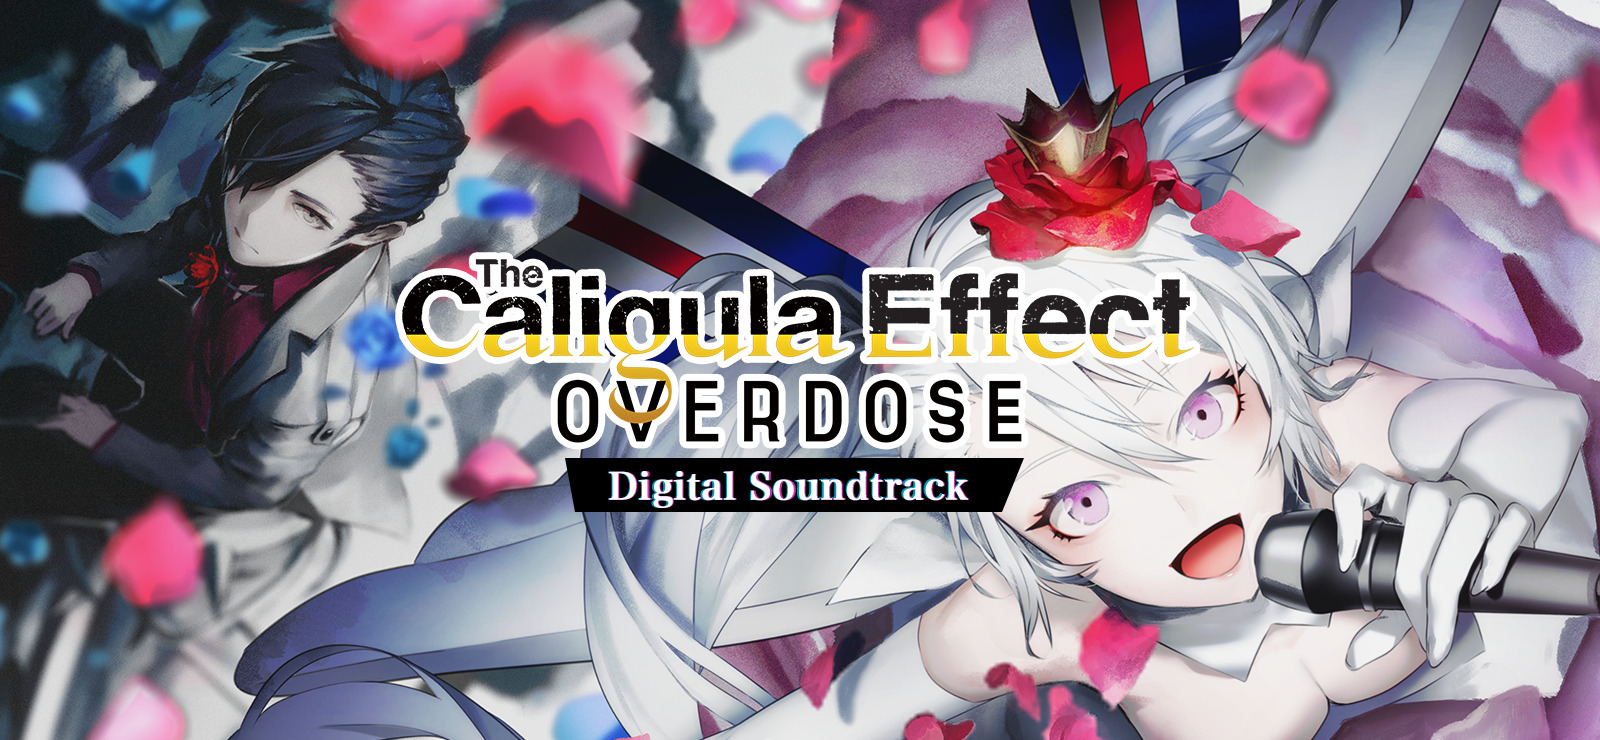 The Caligula Effect: Overdose - Digital Soundtrack DLC Steam CD Key 4.36 $